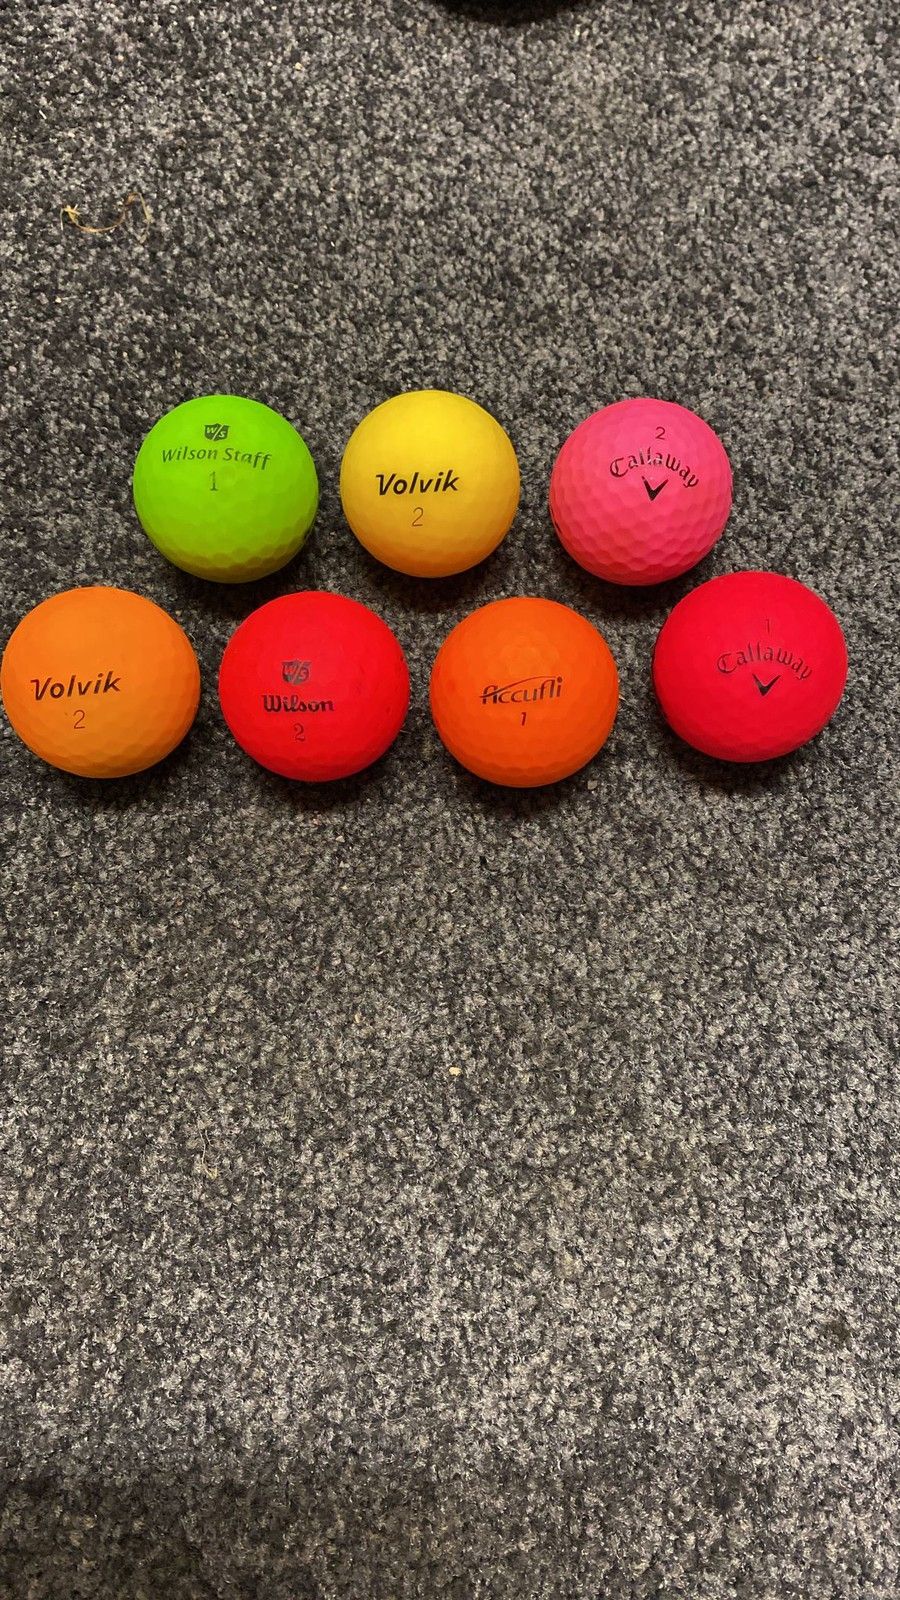 Väripalloja, 25kpl erissä